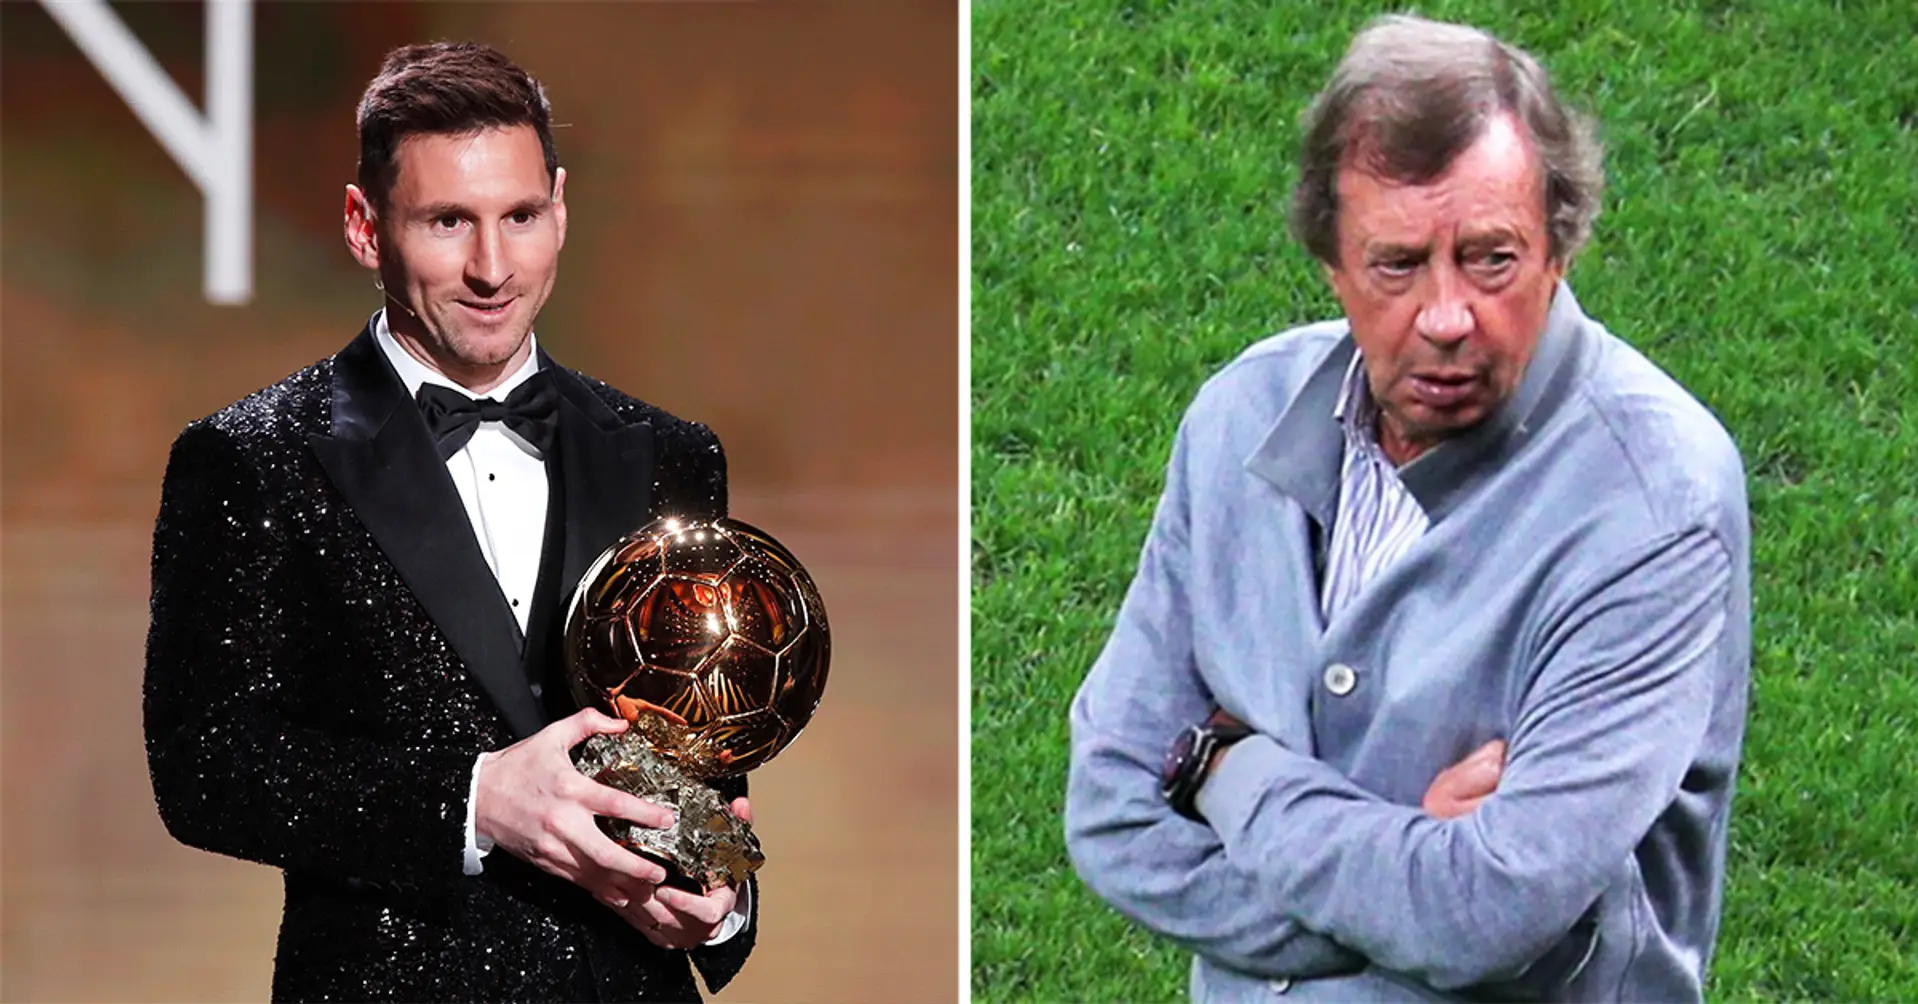 Der legendäre russische Trainer Juri Sjomin reagiert auf Lionel Messis 7. Ballon d'Or